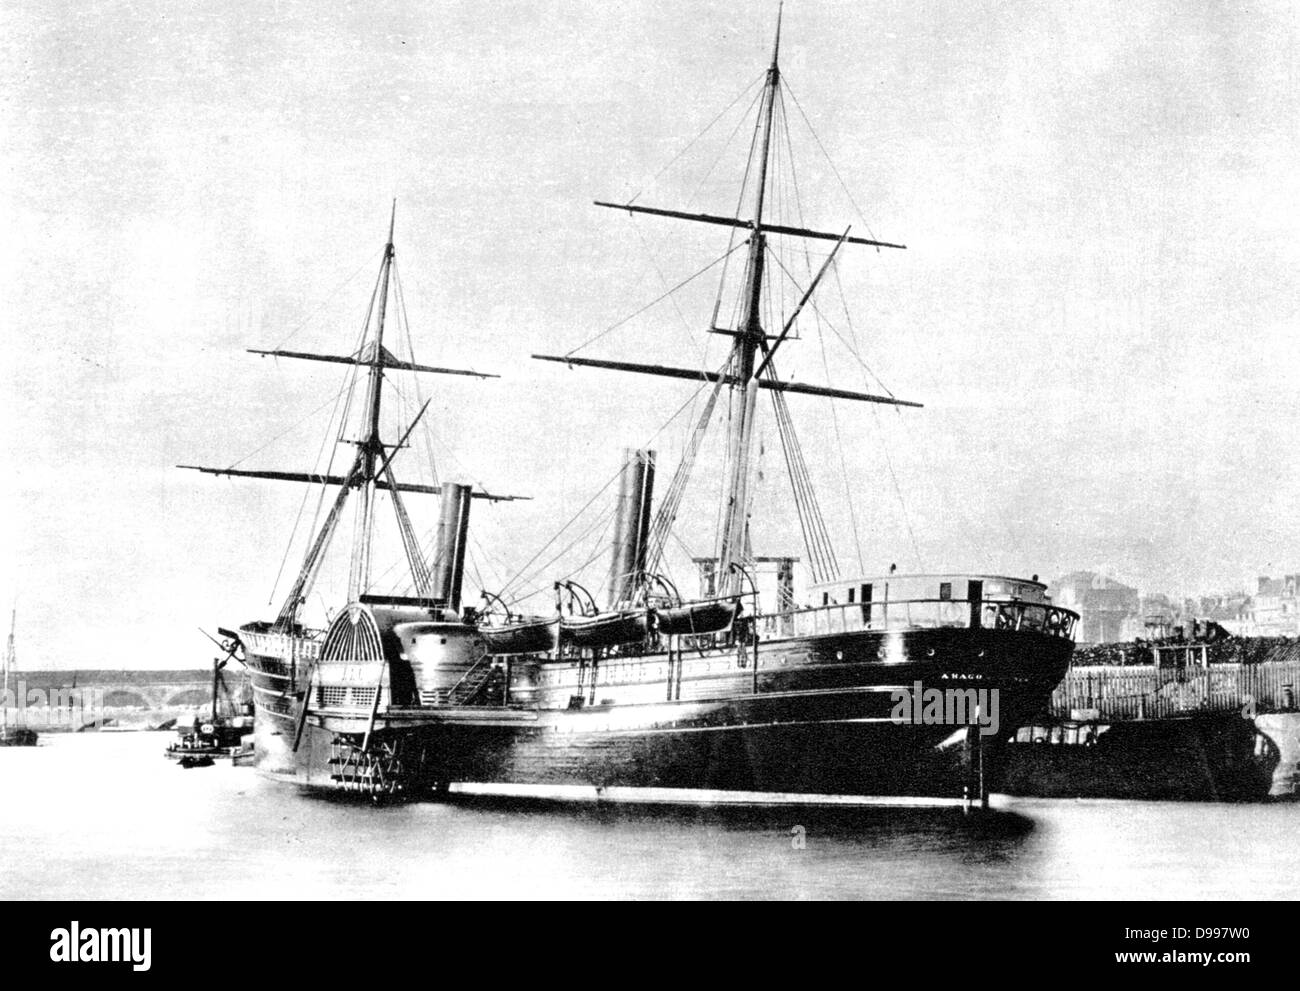 New York & Havre Steam Navigation Company's à aubes "Arago", 1855, dans le port du Havre, France. Transports, Maritime, transatlantique Banque D'Images